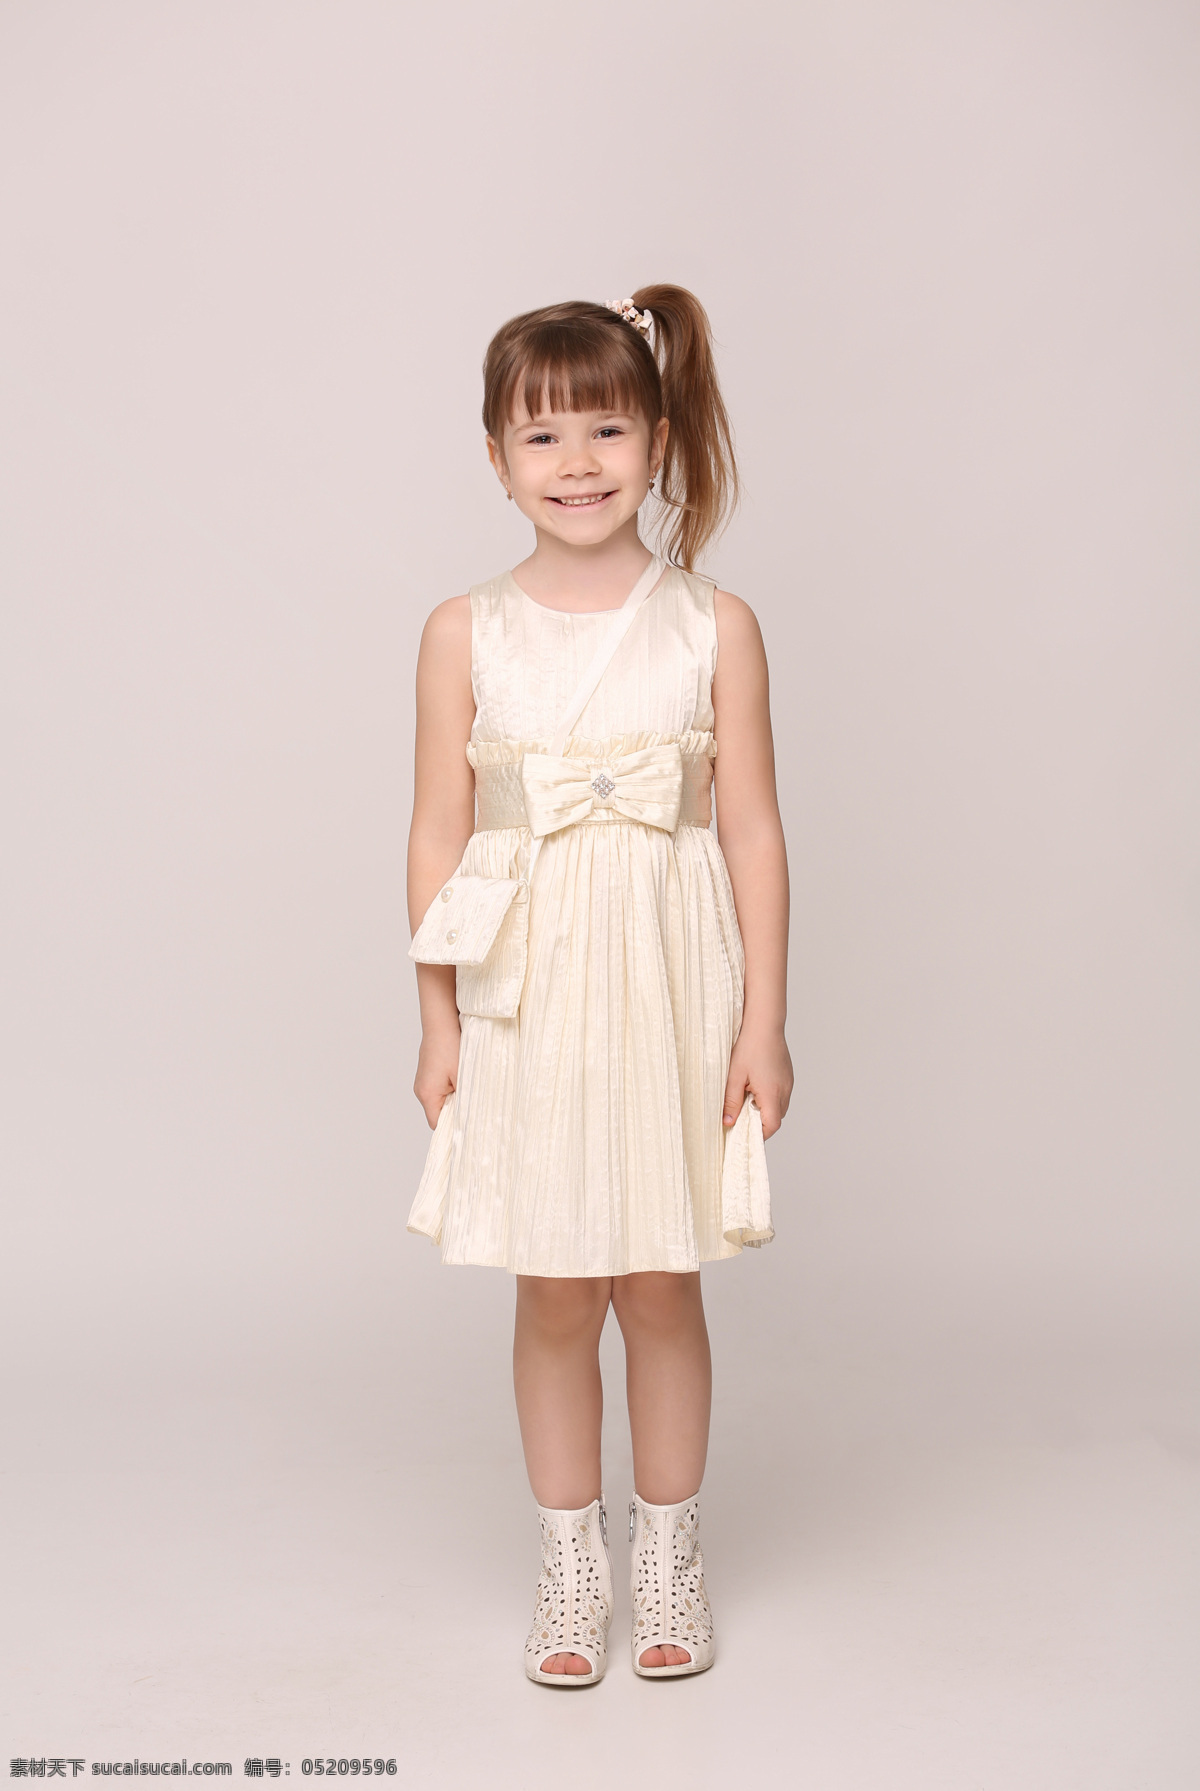 穿着 白色 连衣裙 小女孩 儿童幼儿 外国儿童 白色连衣裙 快乐儿童 儿童图片 人物图片